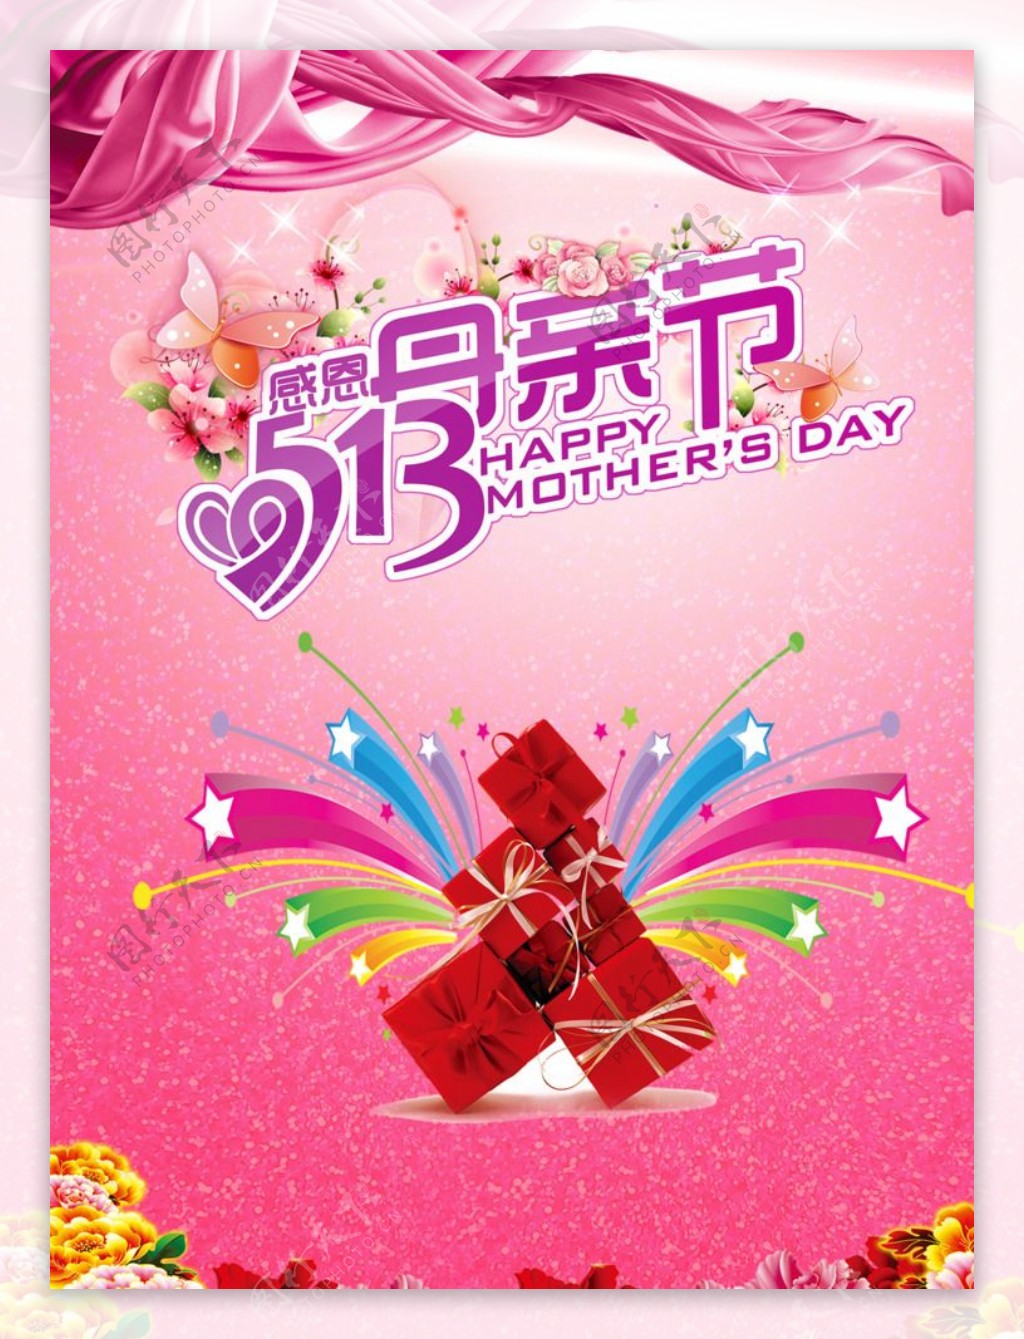 5月13日母亲节海报